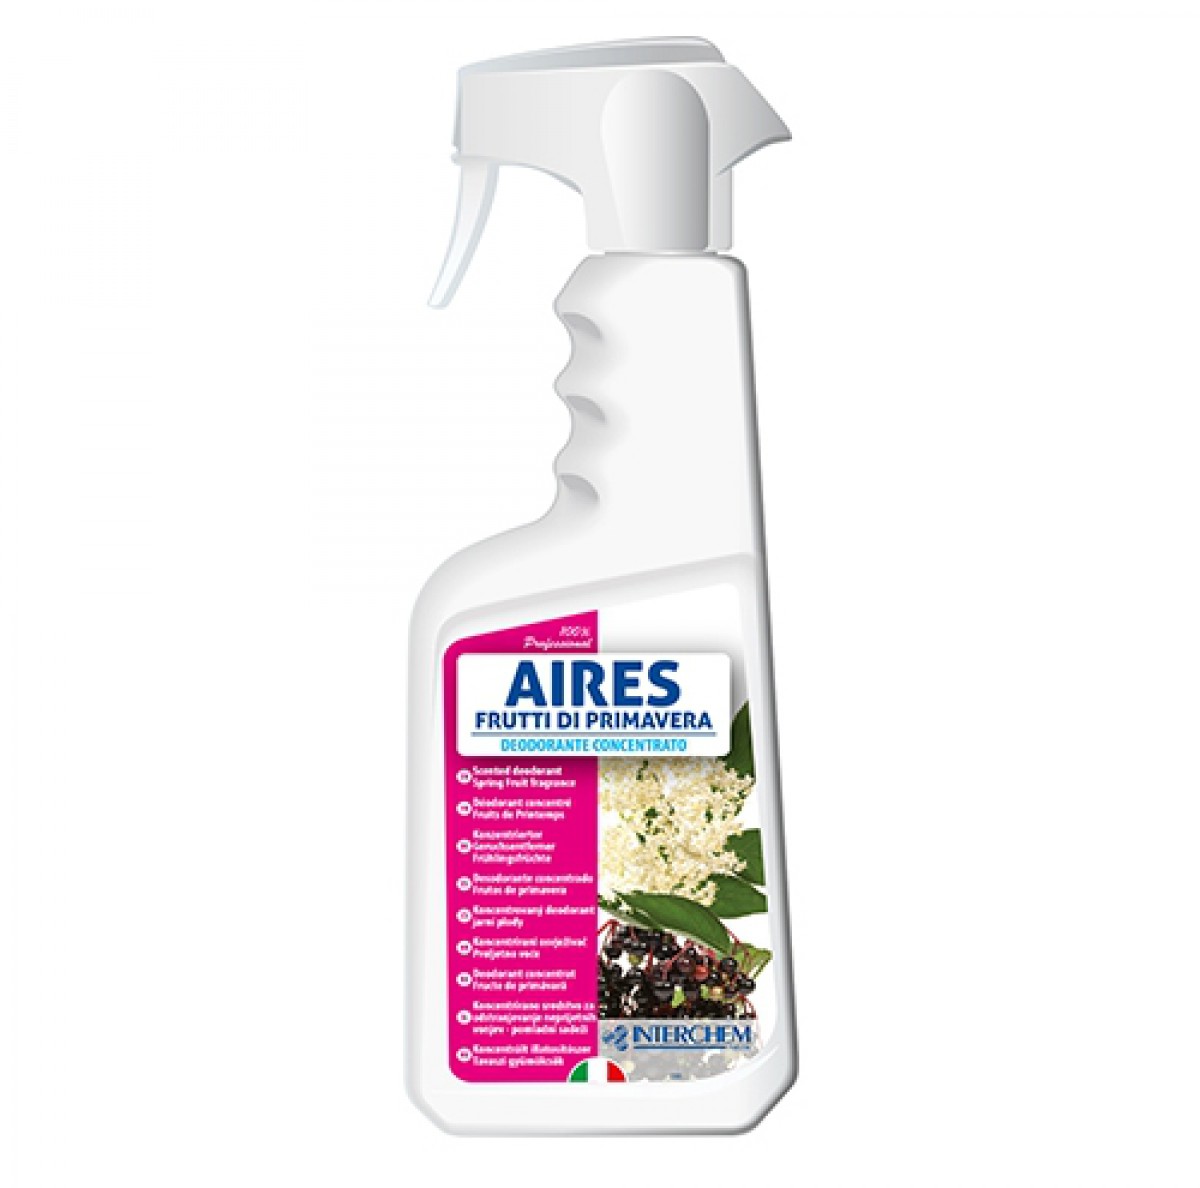 AIRES - 750ml / Super koncentrirani osvježivač za prostorije, površine i tkanine / Jak i dugotrajan miris / Ne sadrži tvari za bojanje/ Mirisi: vanilija i sandal, morska svježina, proljetne vočke, mimoza